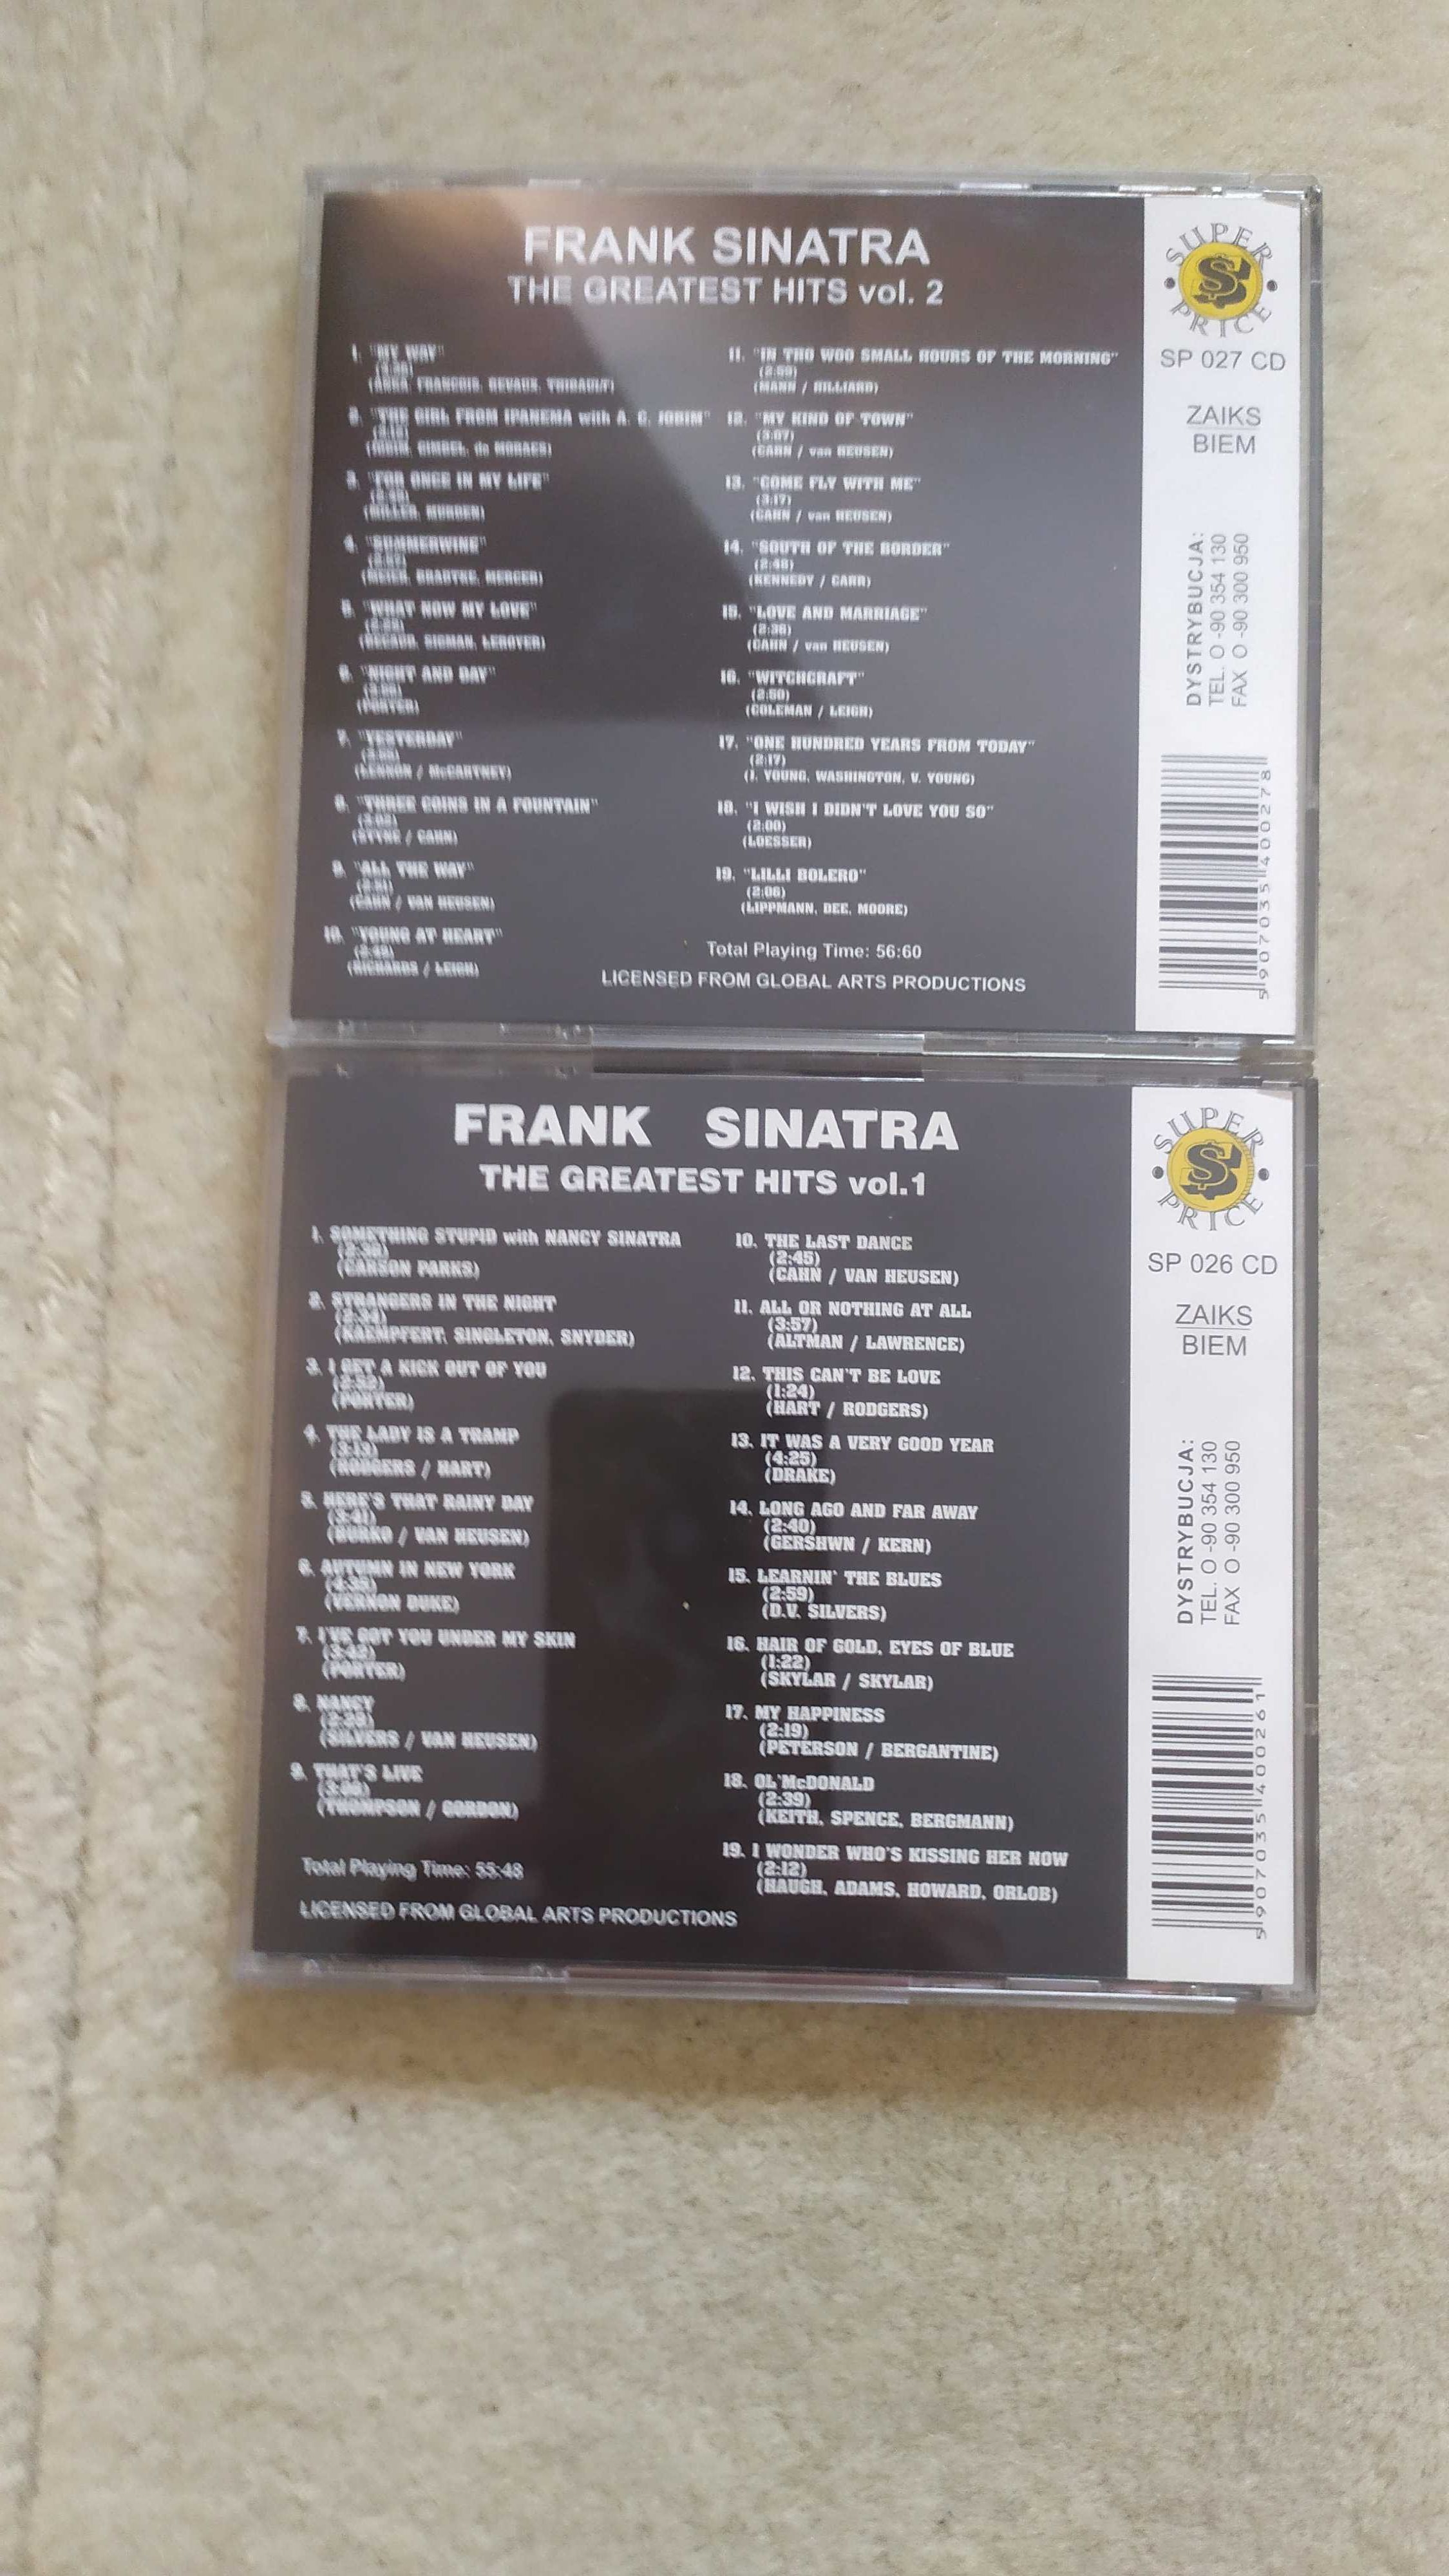 dwie płyty CD z największymi przebojami Franka Sinatry